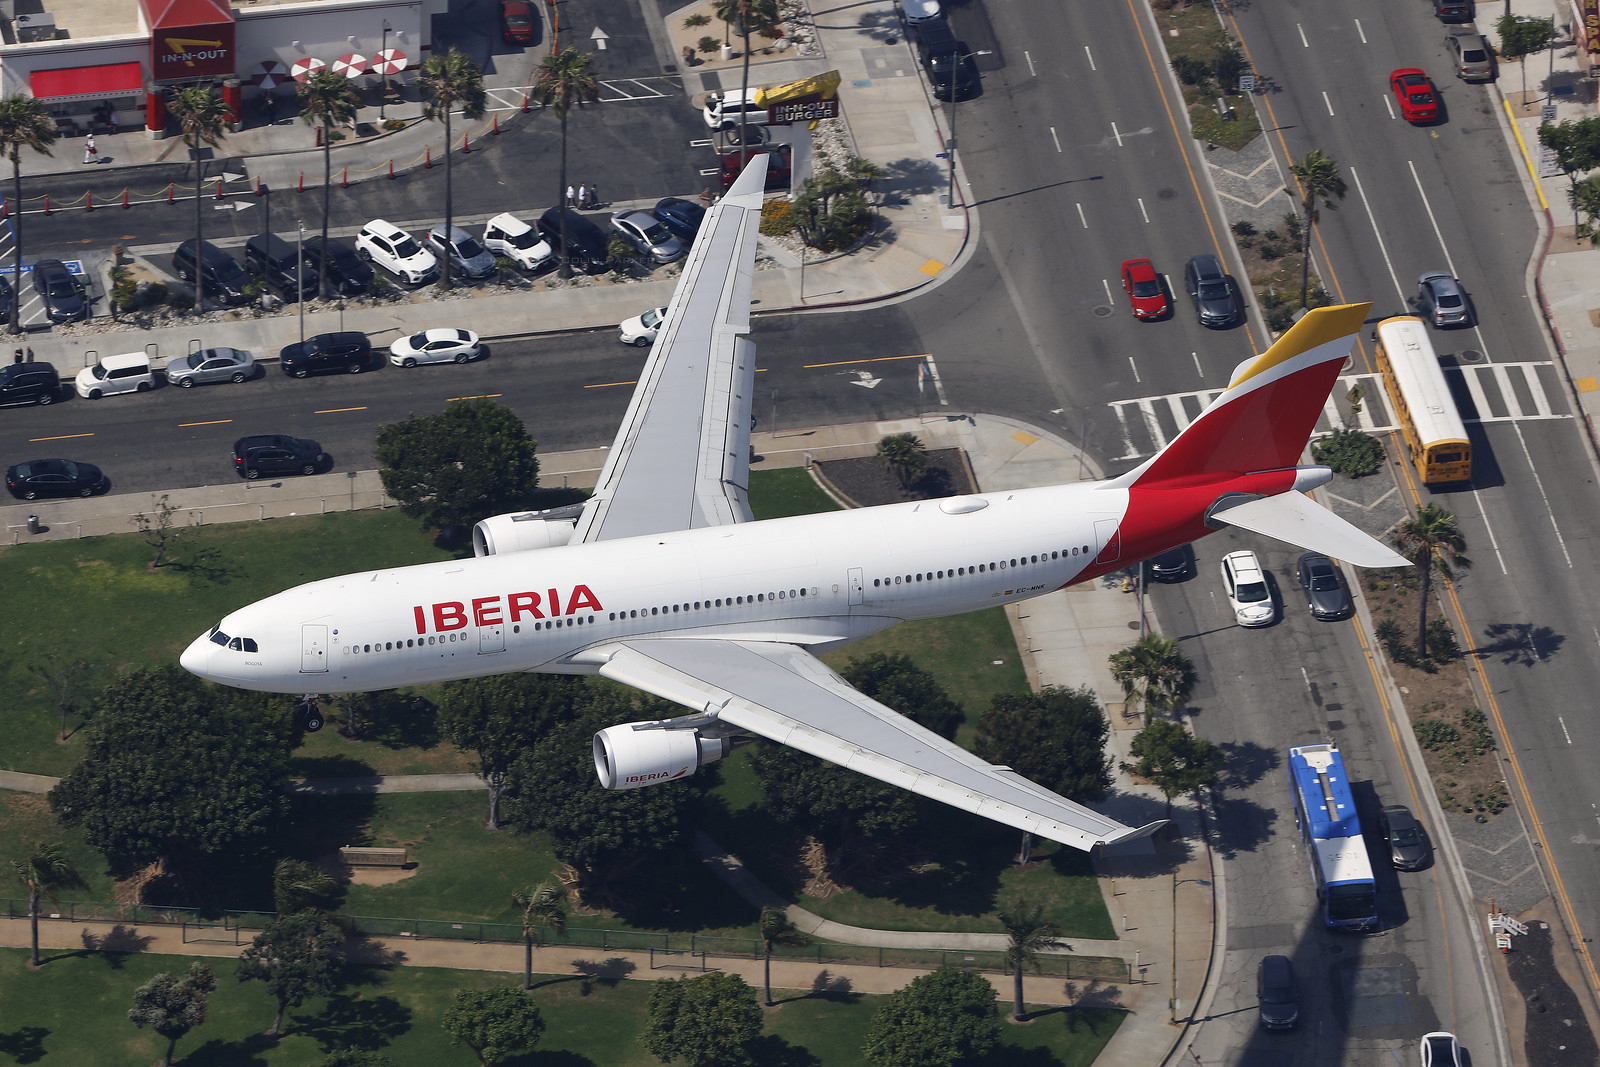 Iberia - Case Study. A300 200 image c/o Colin Parker